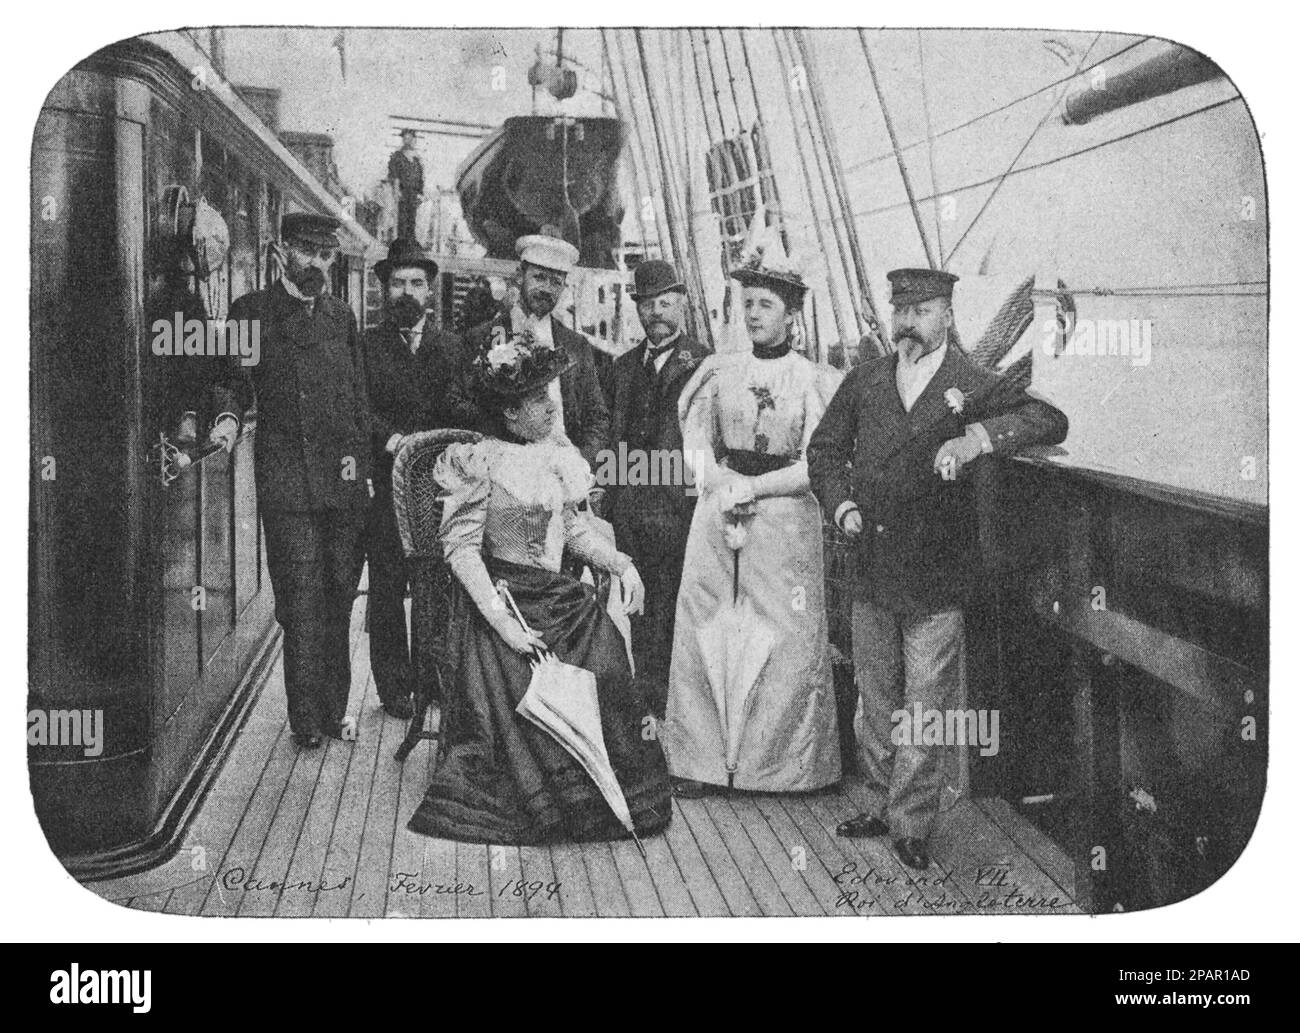 König Edward VII unter Russen auf der Yacht von A.G. Kusnetsov 'Foros' in der Nähe von Cannes. Foto von 1894. Stockfoto